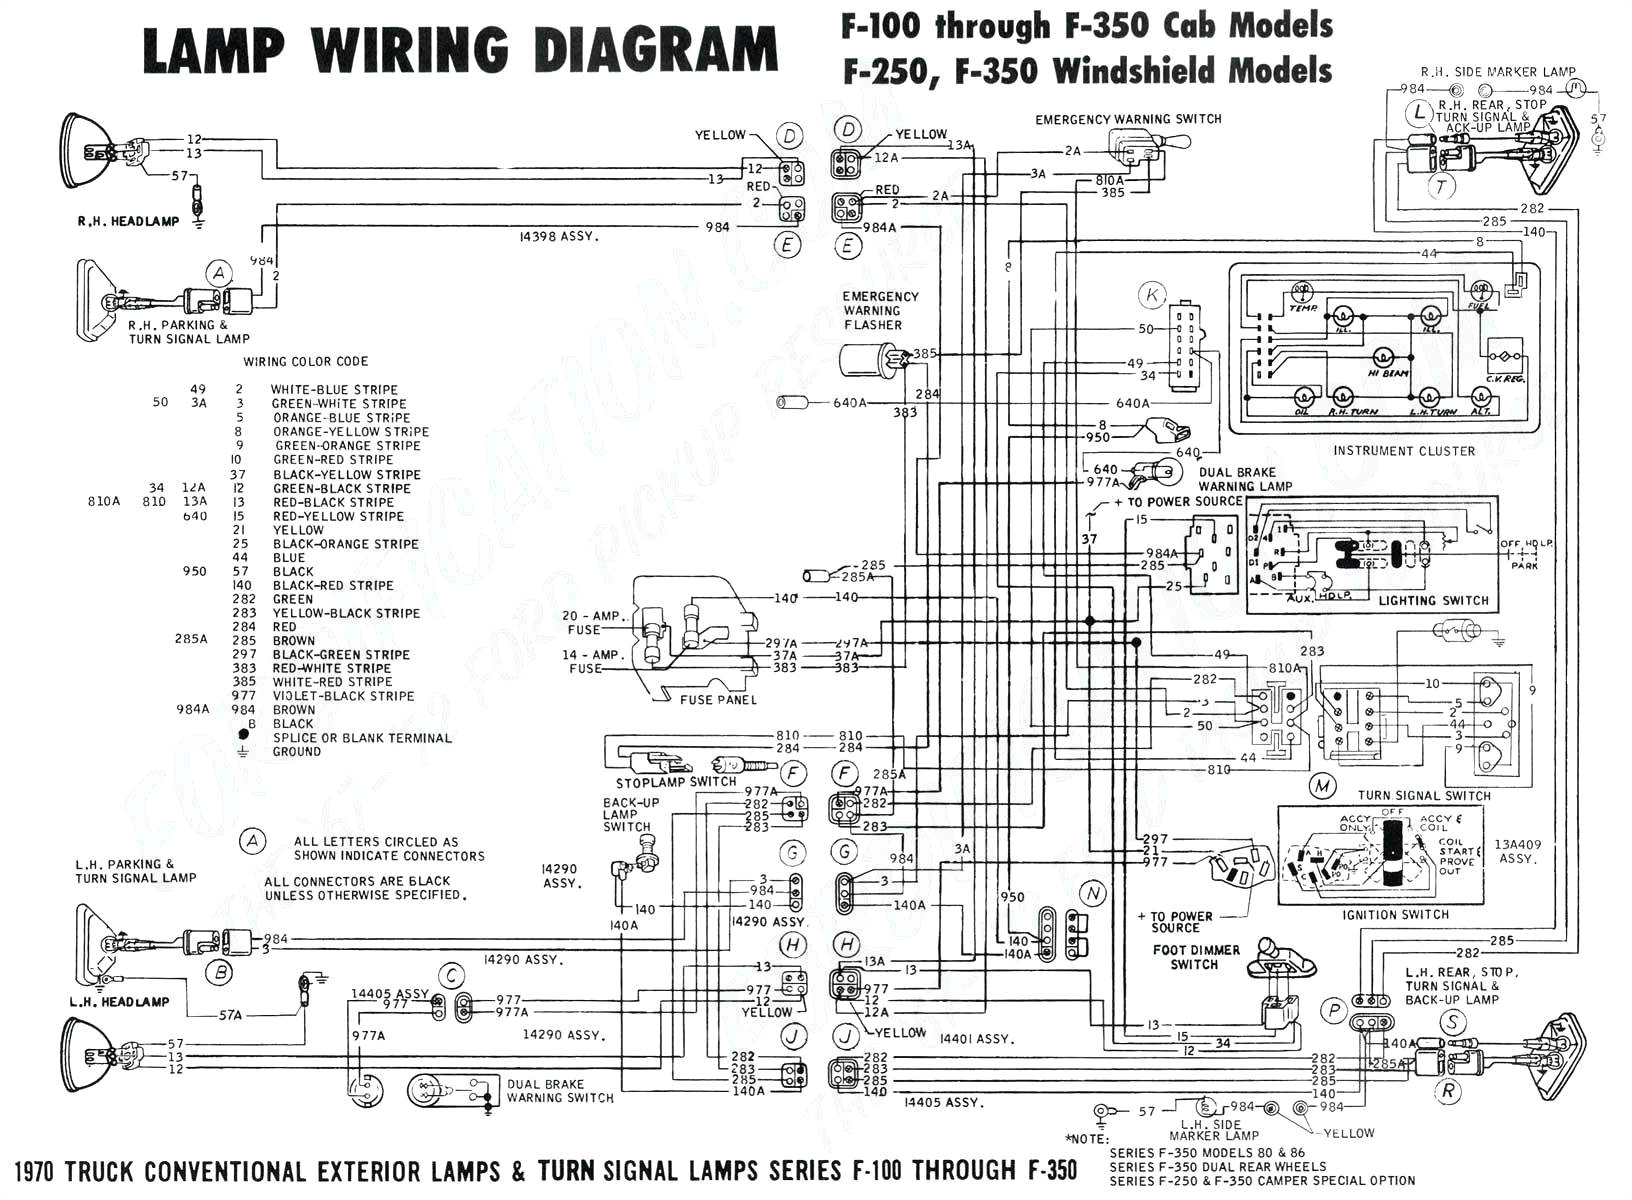 1989 chevy truck wiring schematic wiring diagram post 89 chevy truck tail light wiring diagram wiring